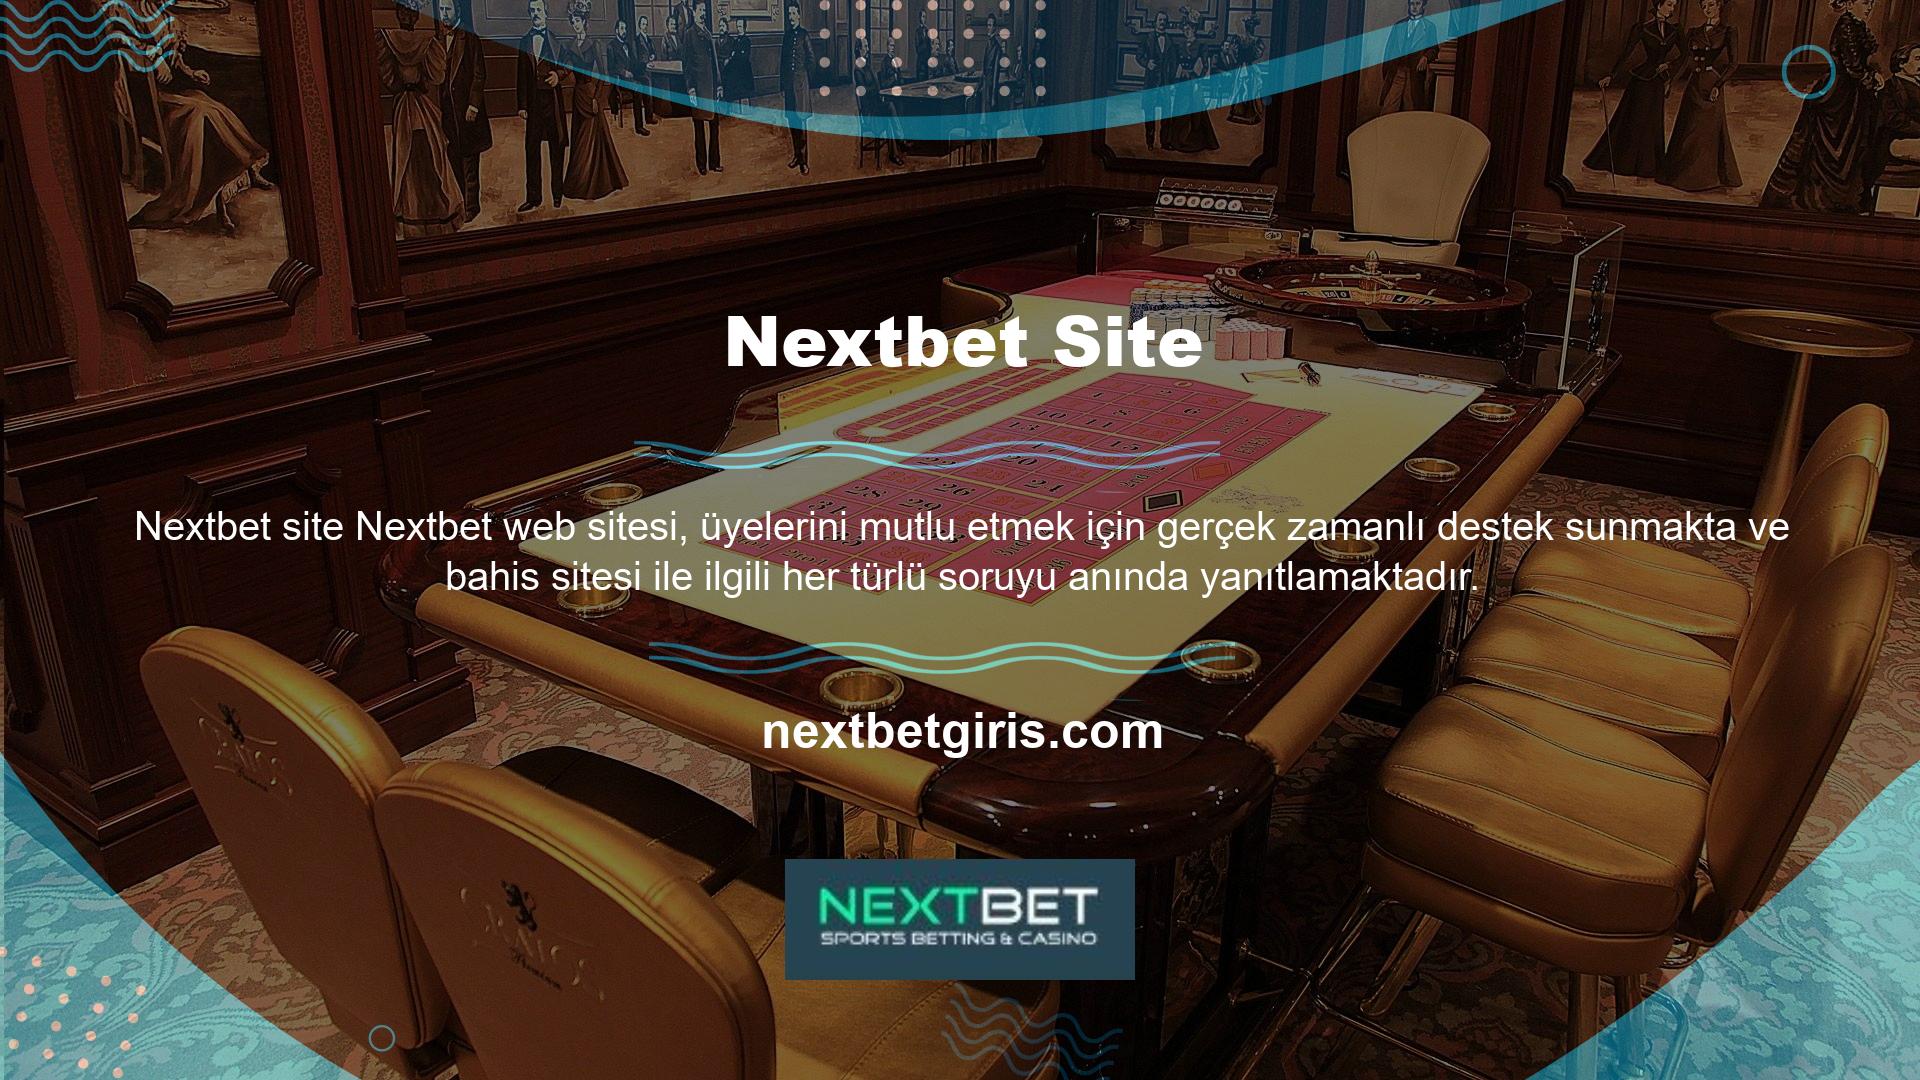 Aynı zamanda üyeler ve yeni kayıt olan üyeler için de bir gelir kaynağıdır ve Nextbet onlara büyük miktarda gelir Nextbet